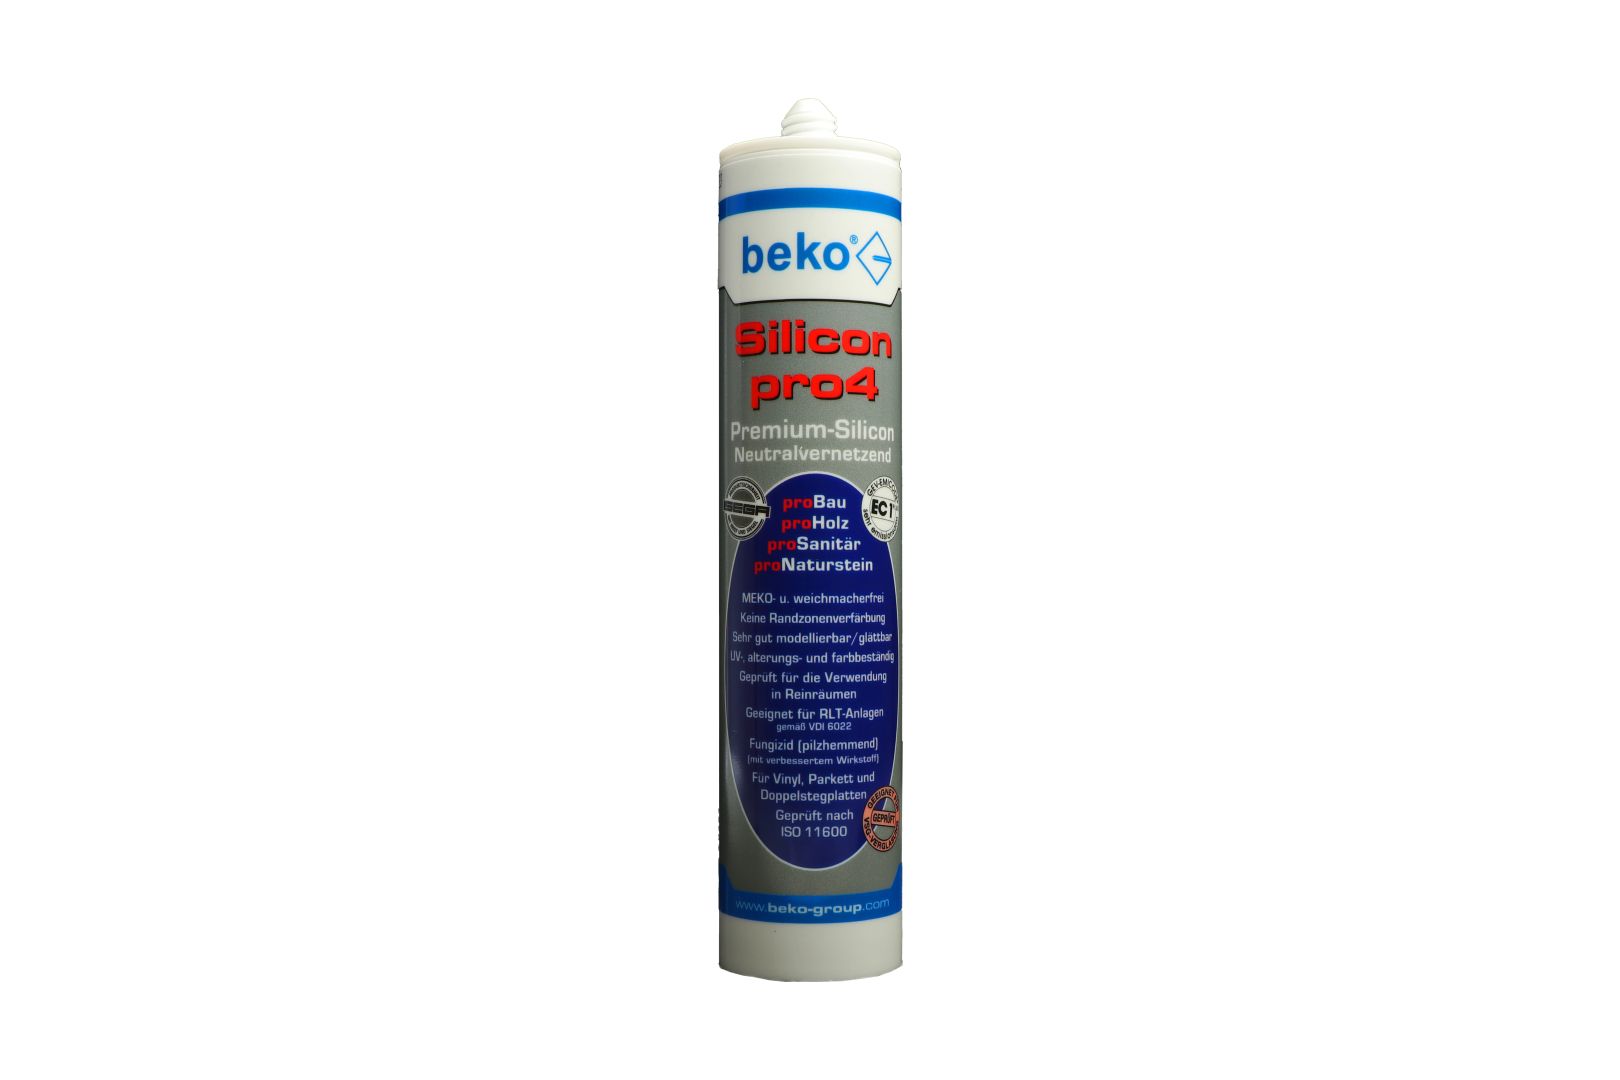 beko Silicon pro4, Premium-Silicon, Silikon-Dichtstoff, neutralvernetzend, hellbraun/buche­-hell , 310 ml